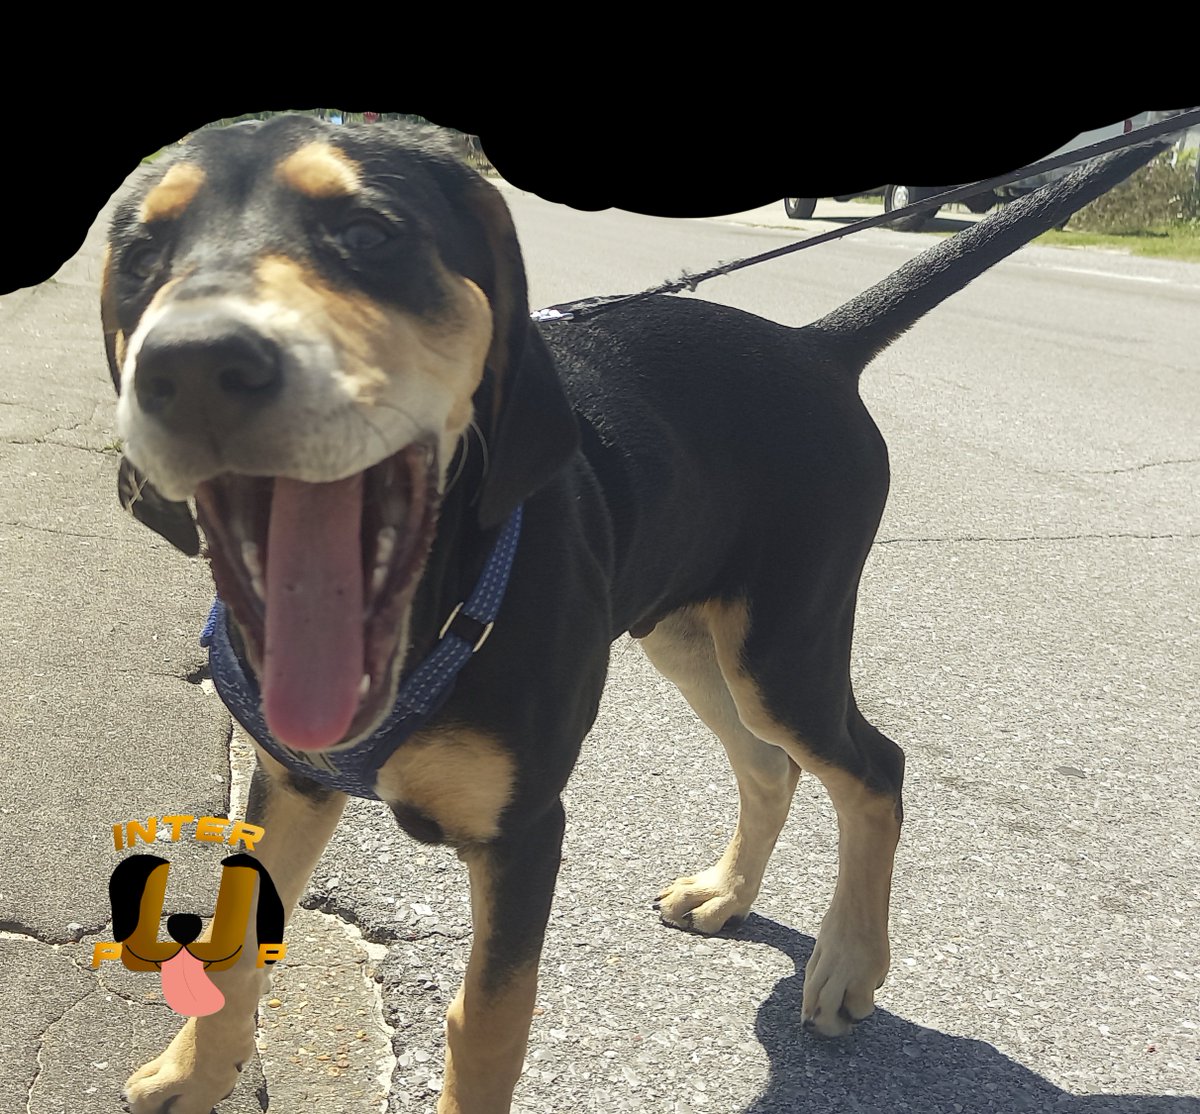 Happy hound on the go! | James Bean

#InterPup #JamesBean #Puppy #Pup #Dog #PuppyPictures #Beagle #Coonhound #BlackandTan #BlackandTanCoonhound #doggy #pet #mydog #doglover #pupper #bark #spoiled #dogstagram #dogsofinstagram #puppiesofinstagram #doglife #dogs #ilovemydog